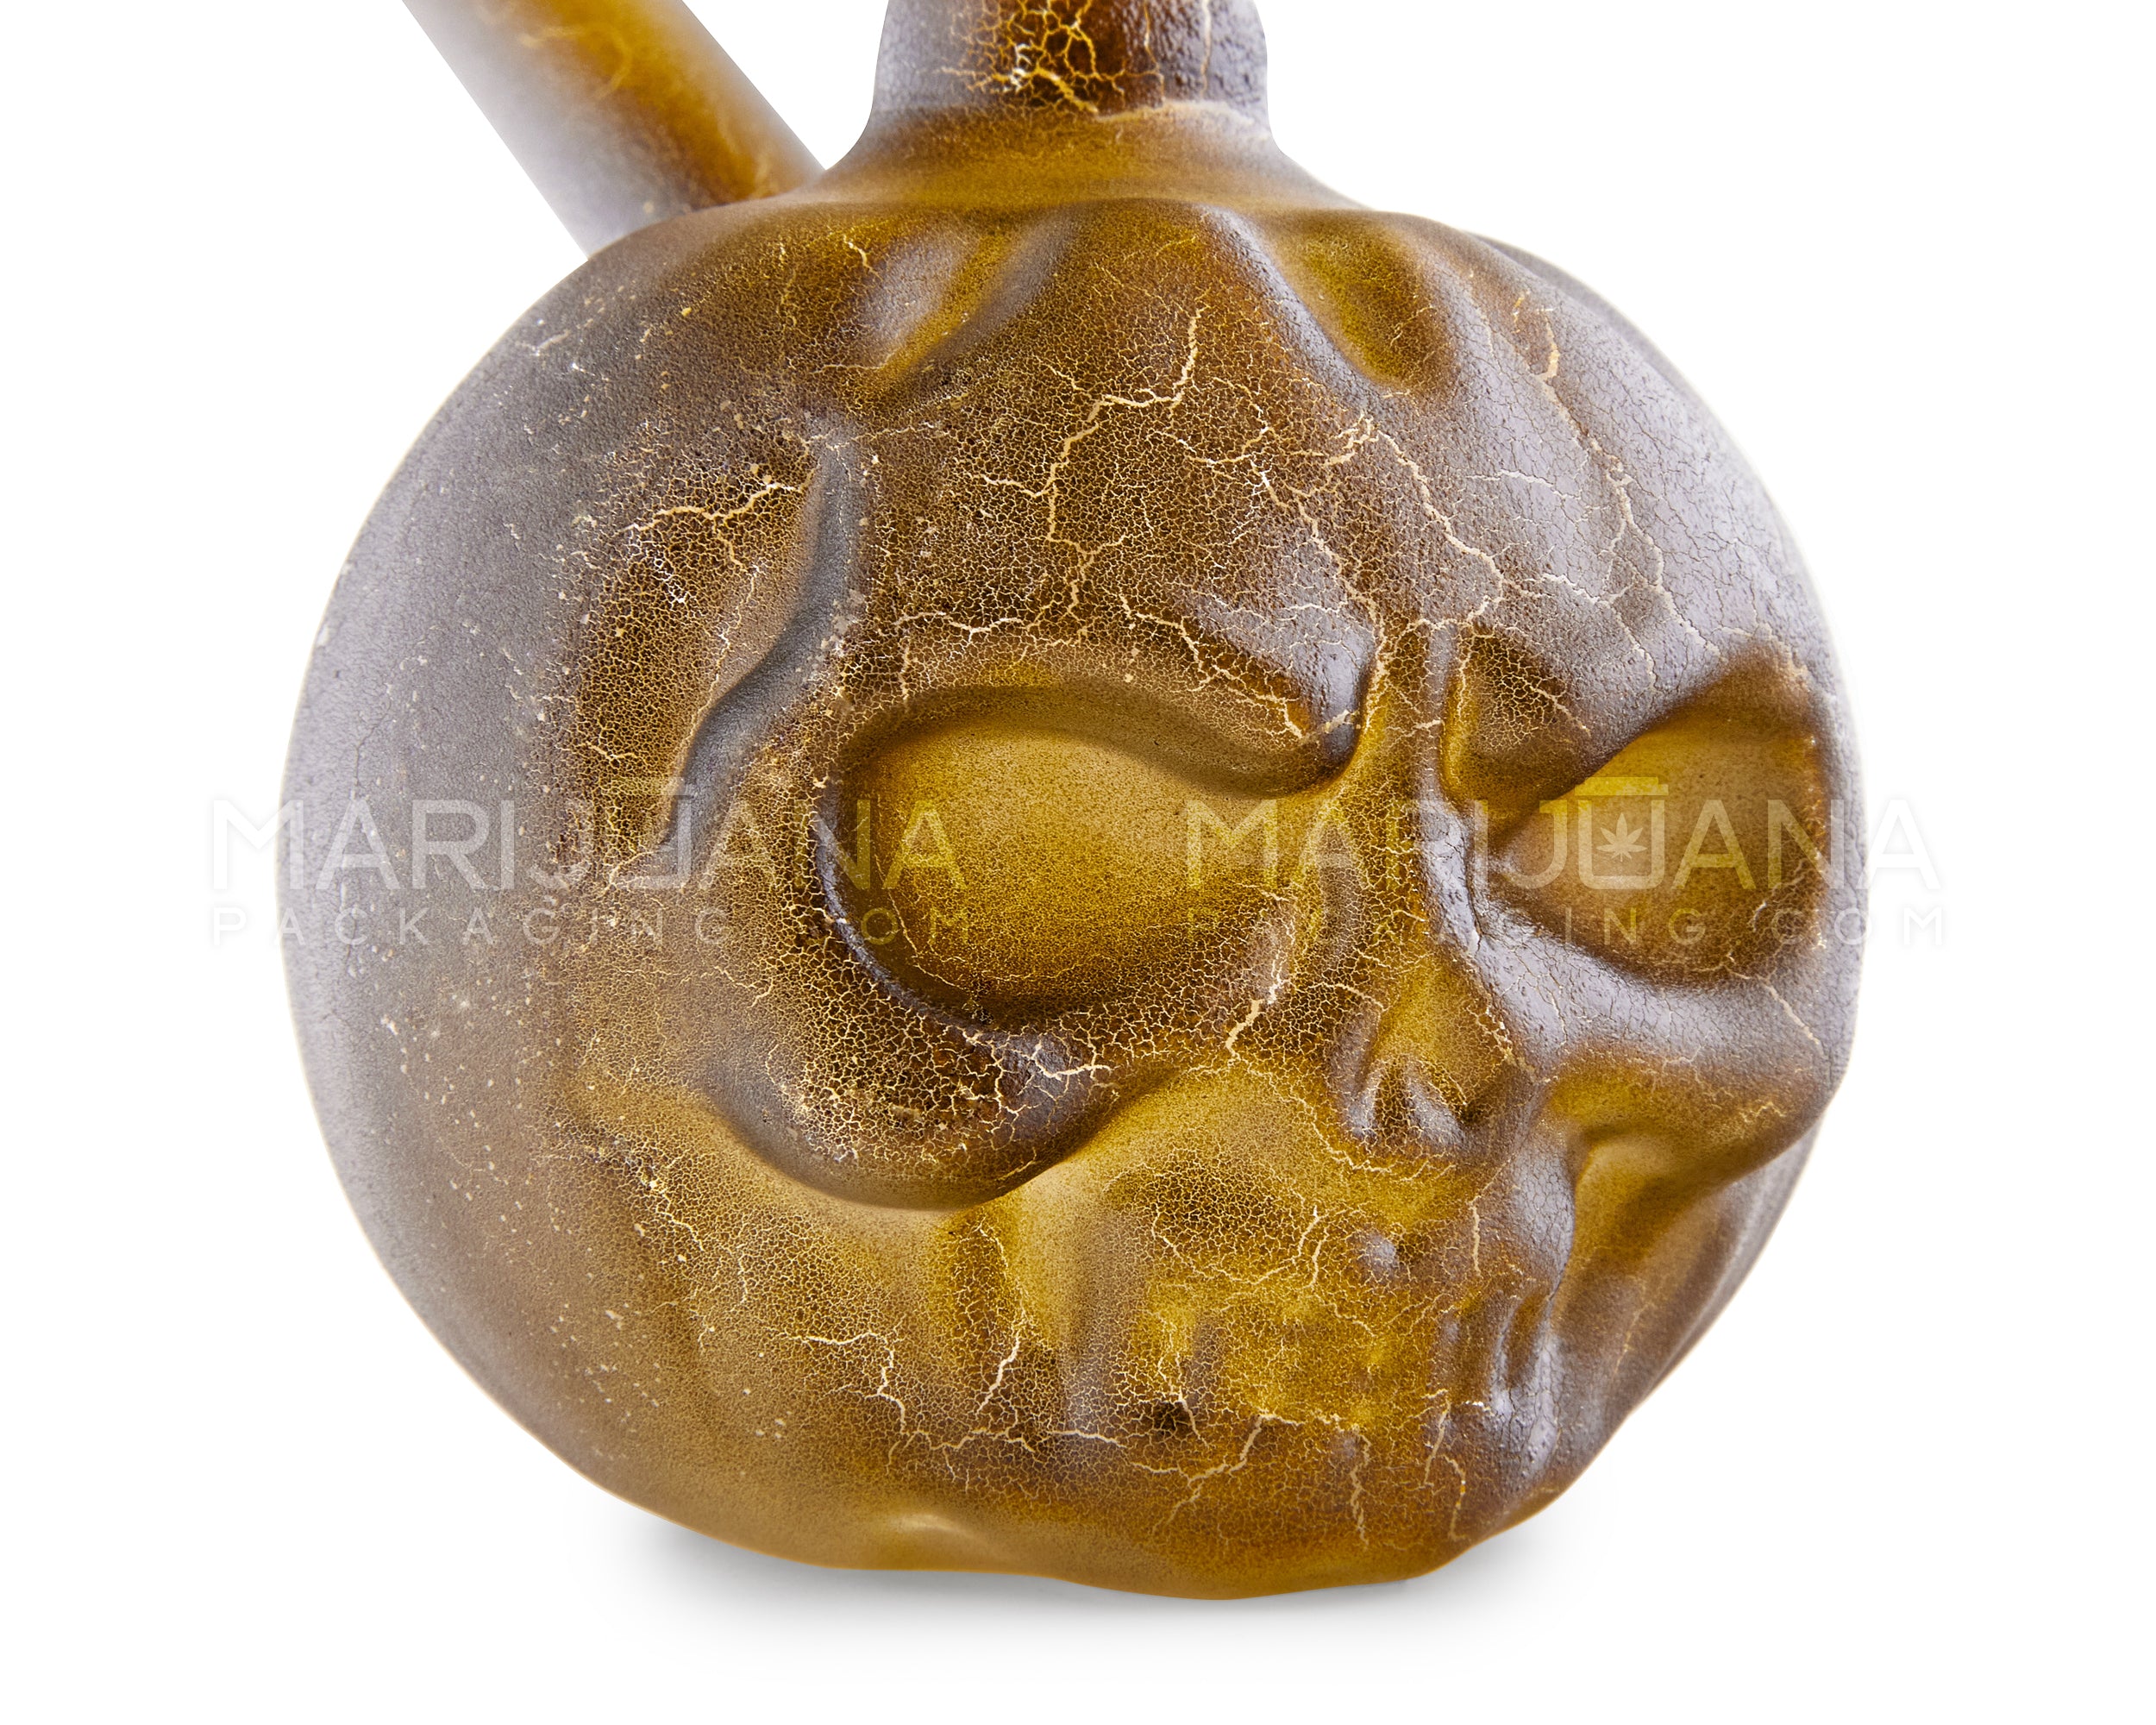 USA Glass | Mini Pumpkin Skull Glass Water Pipe | 3.5in Tall - 14mm Bowl - Assorted